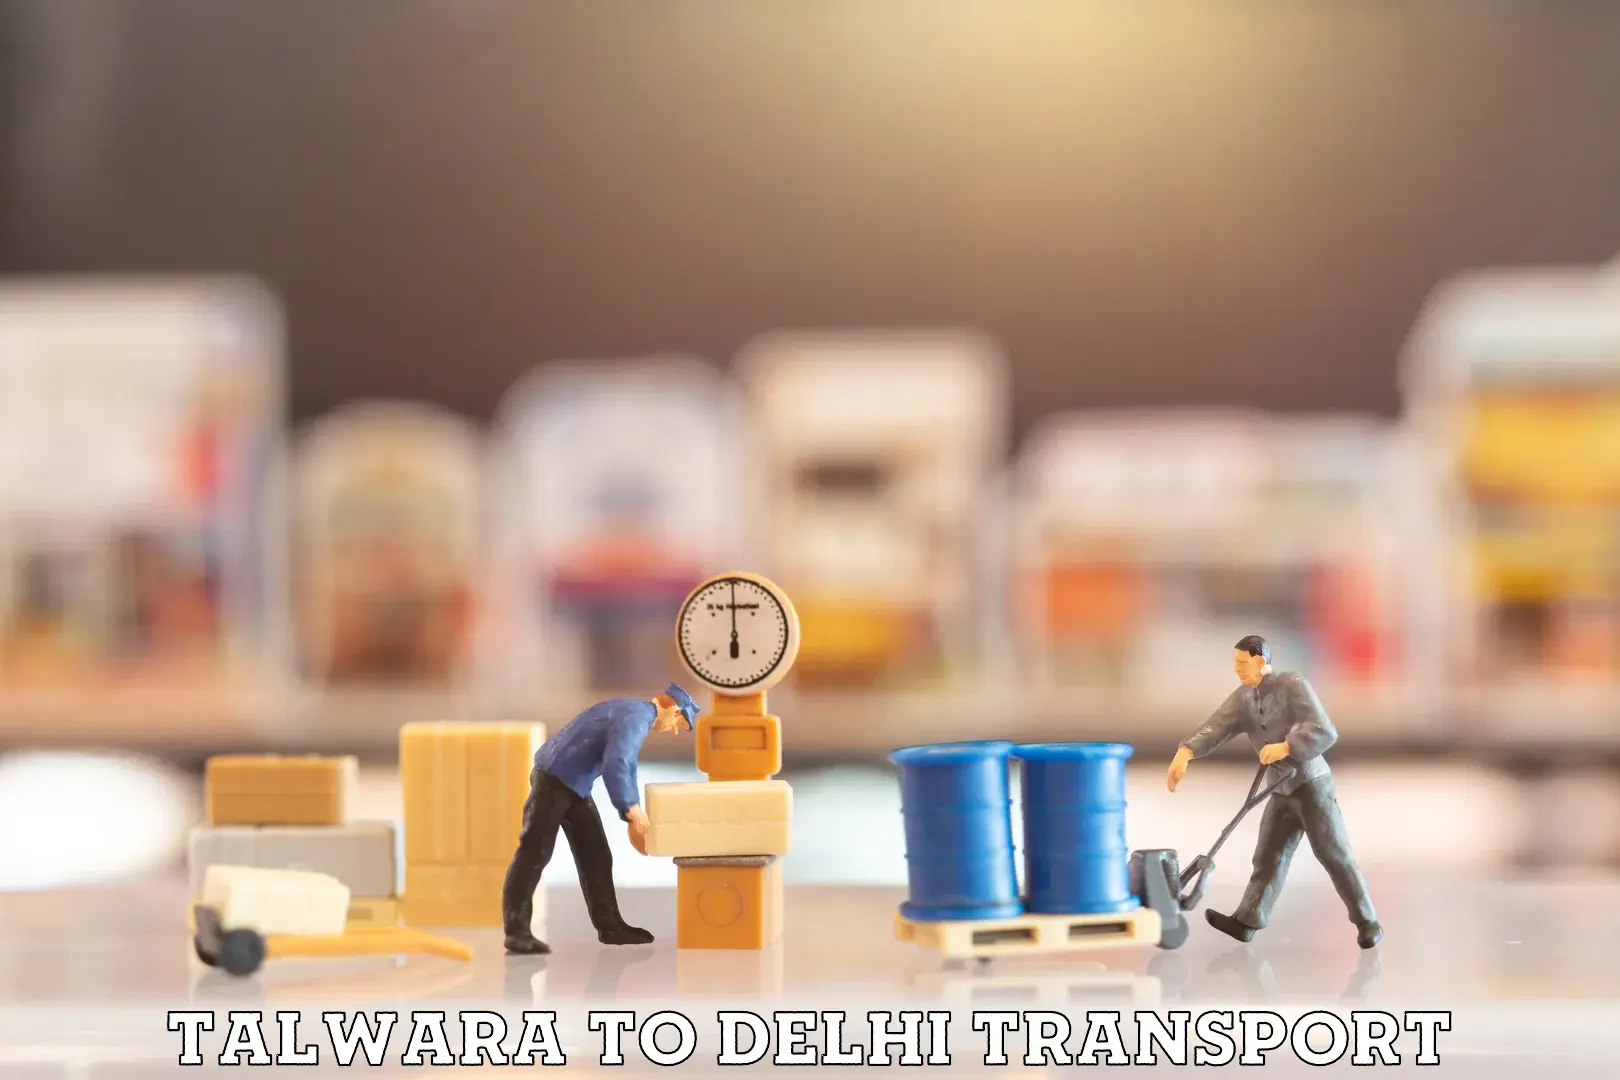 Road transport online services Talwara to Burari